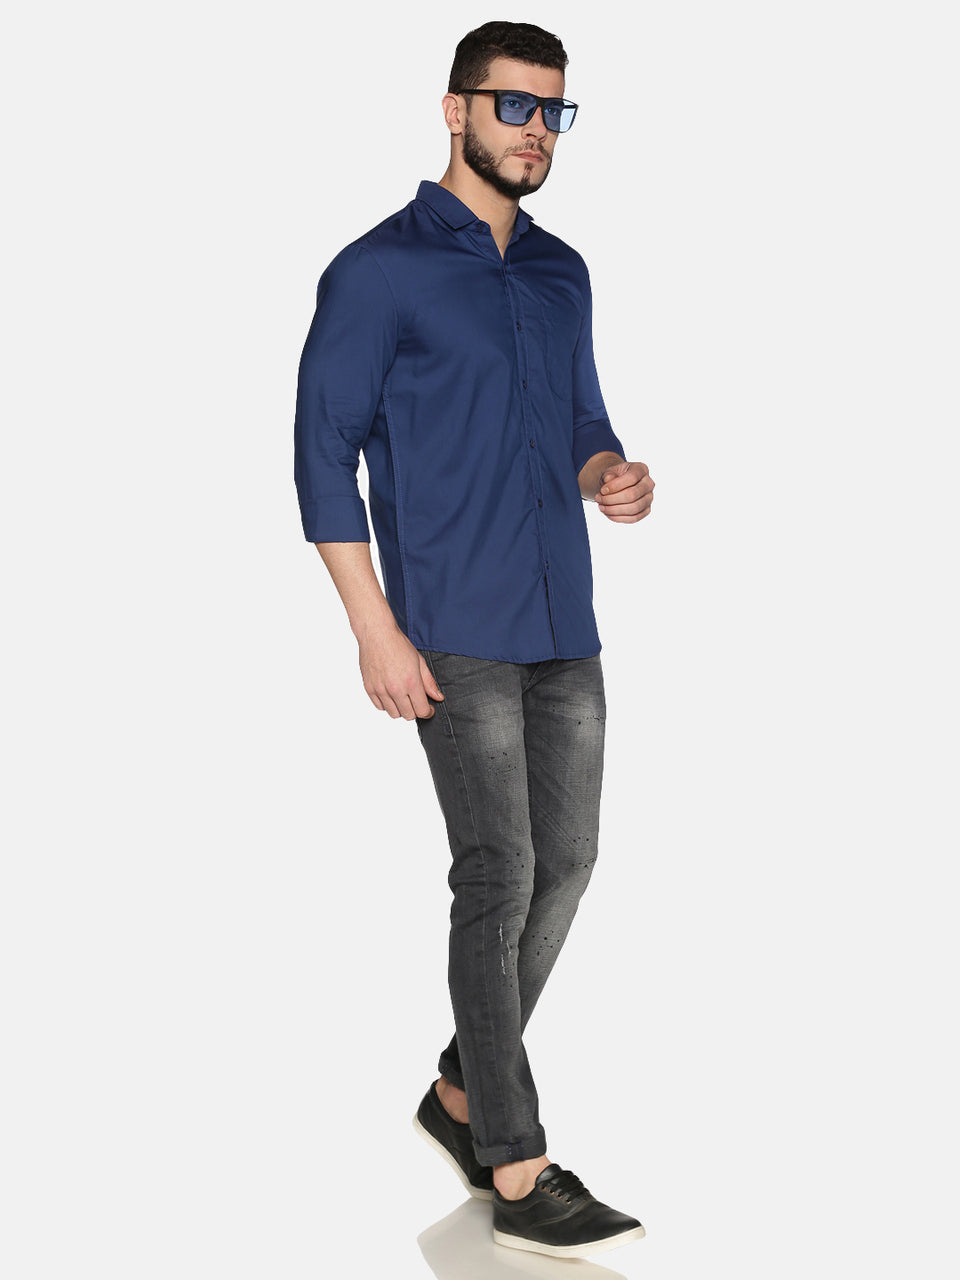 Men blue cotton slim fit plain formal shirt